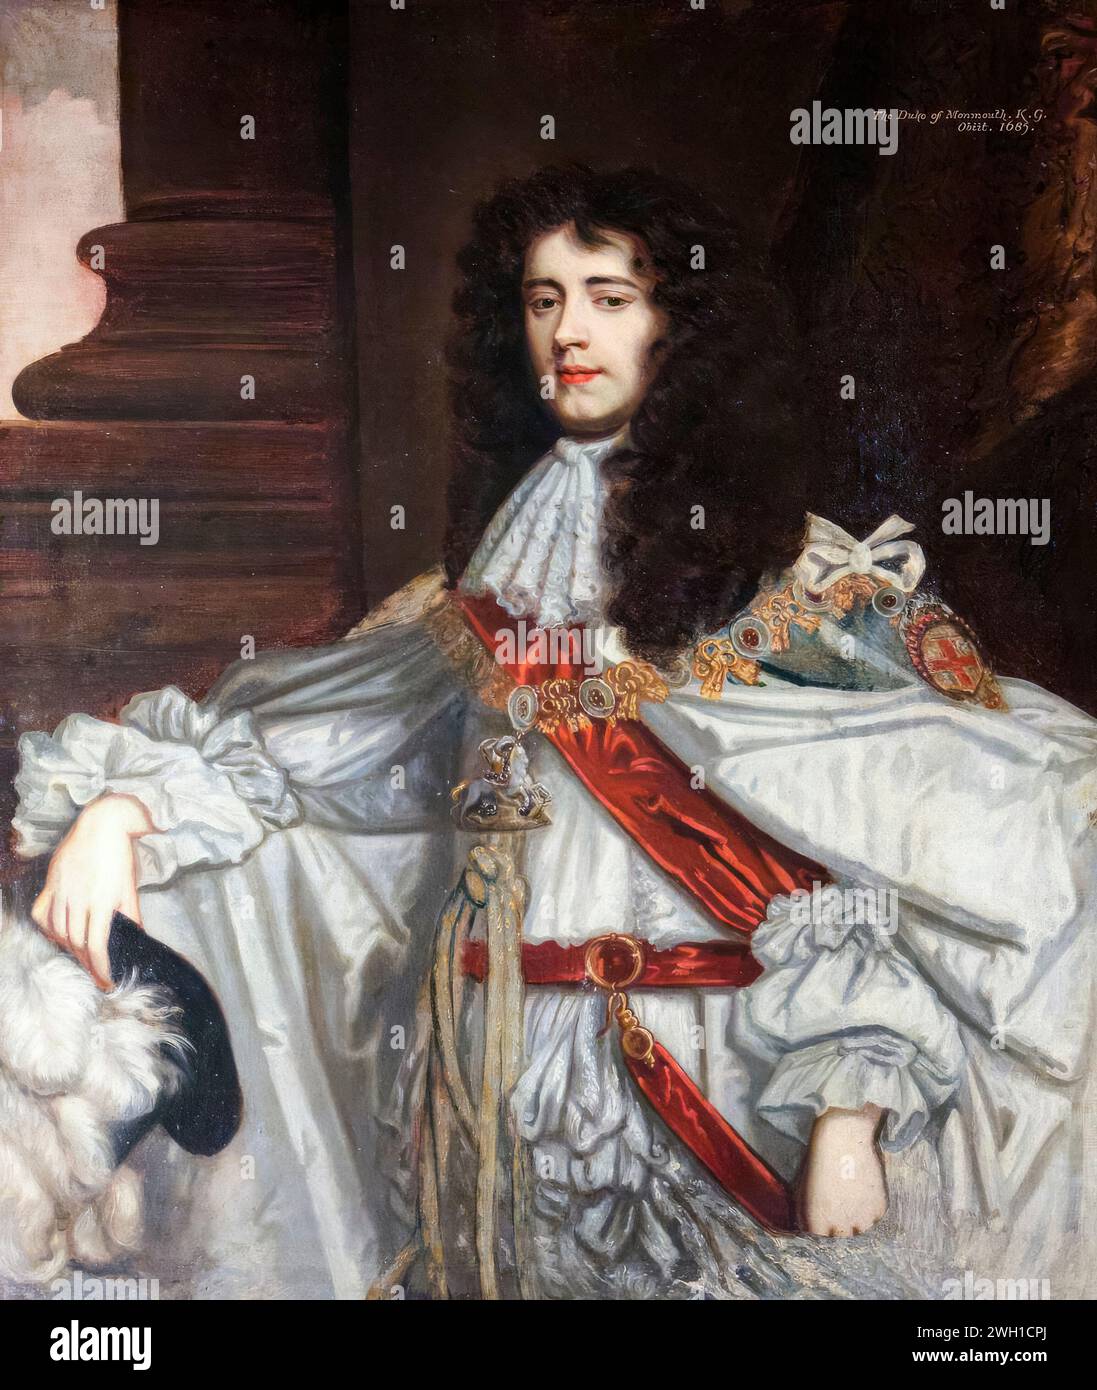 James Scott, 1. Duke of Monmouth, 1. Duke of Buccleuch (1649–1685), englischer Adliger und Offizier in den Niederlanden, Porträtgemälde in Öl auf Leinwand von Sir Peter Lely, um 1682 Stockfoto